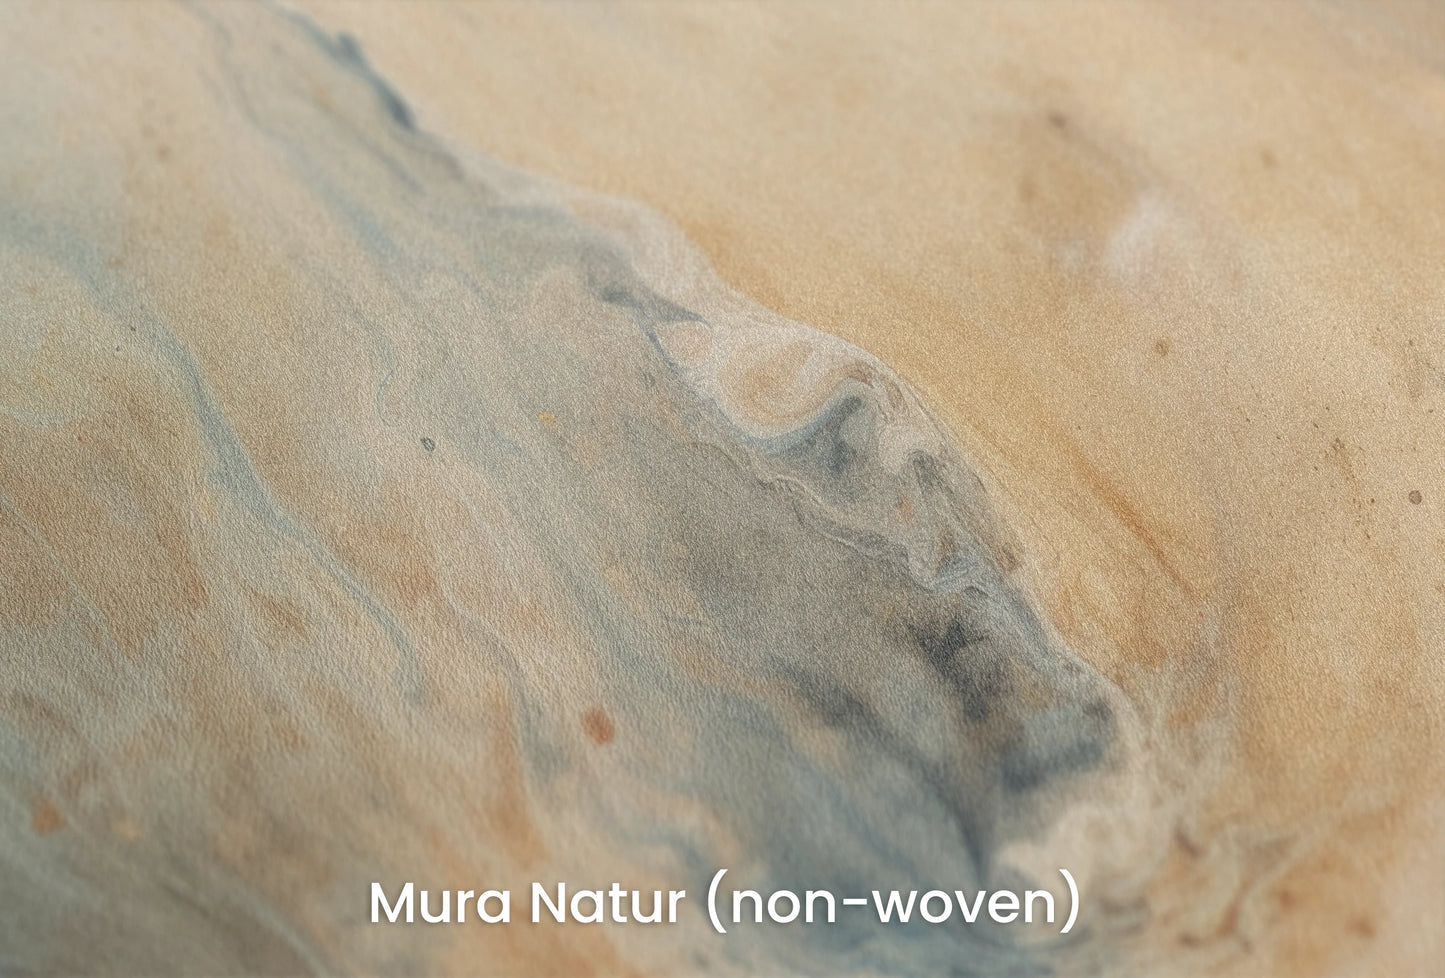 Zbliżenie na artystyczną fototapetę o nazwie Jupiter's Storm #2 na podłożu Mura Natur (non-woven) - naturalne i ekologiczne podłoże.